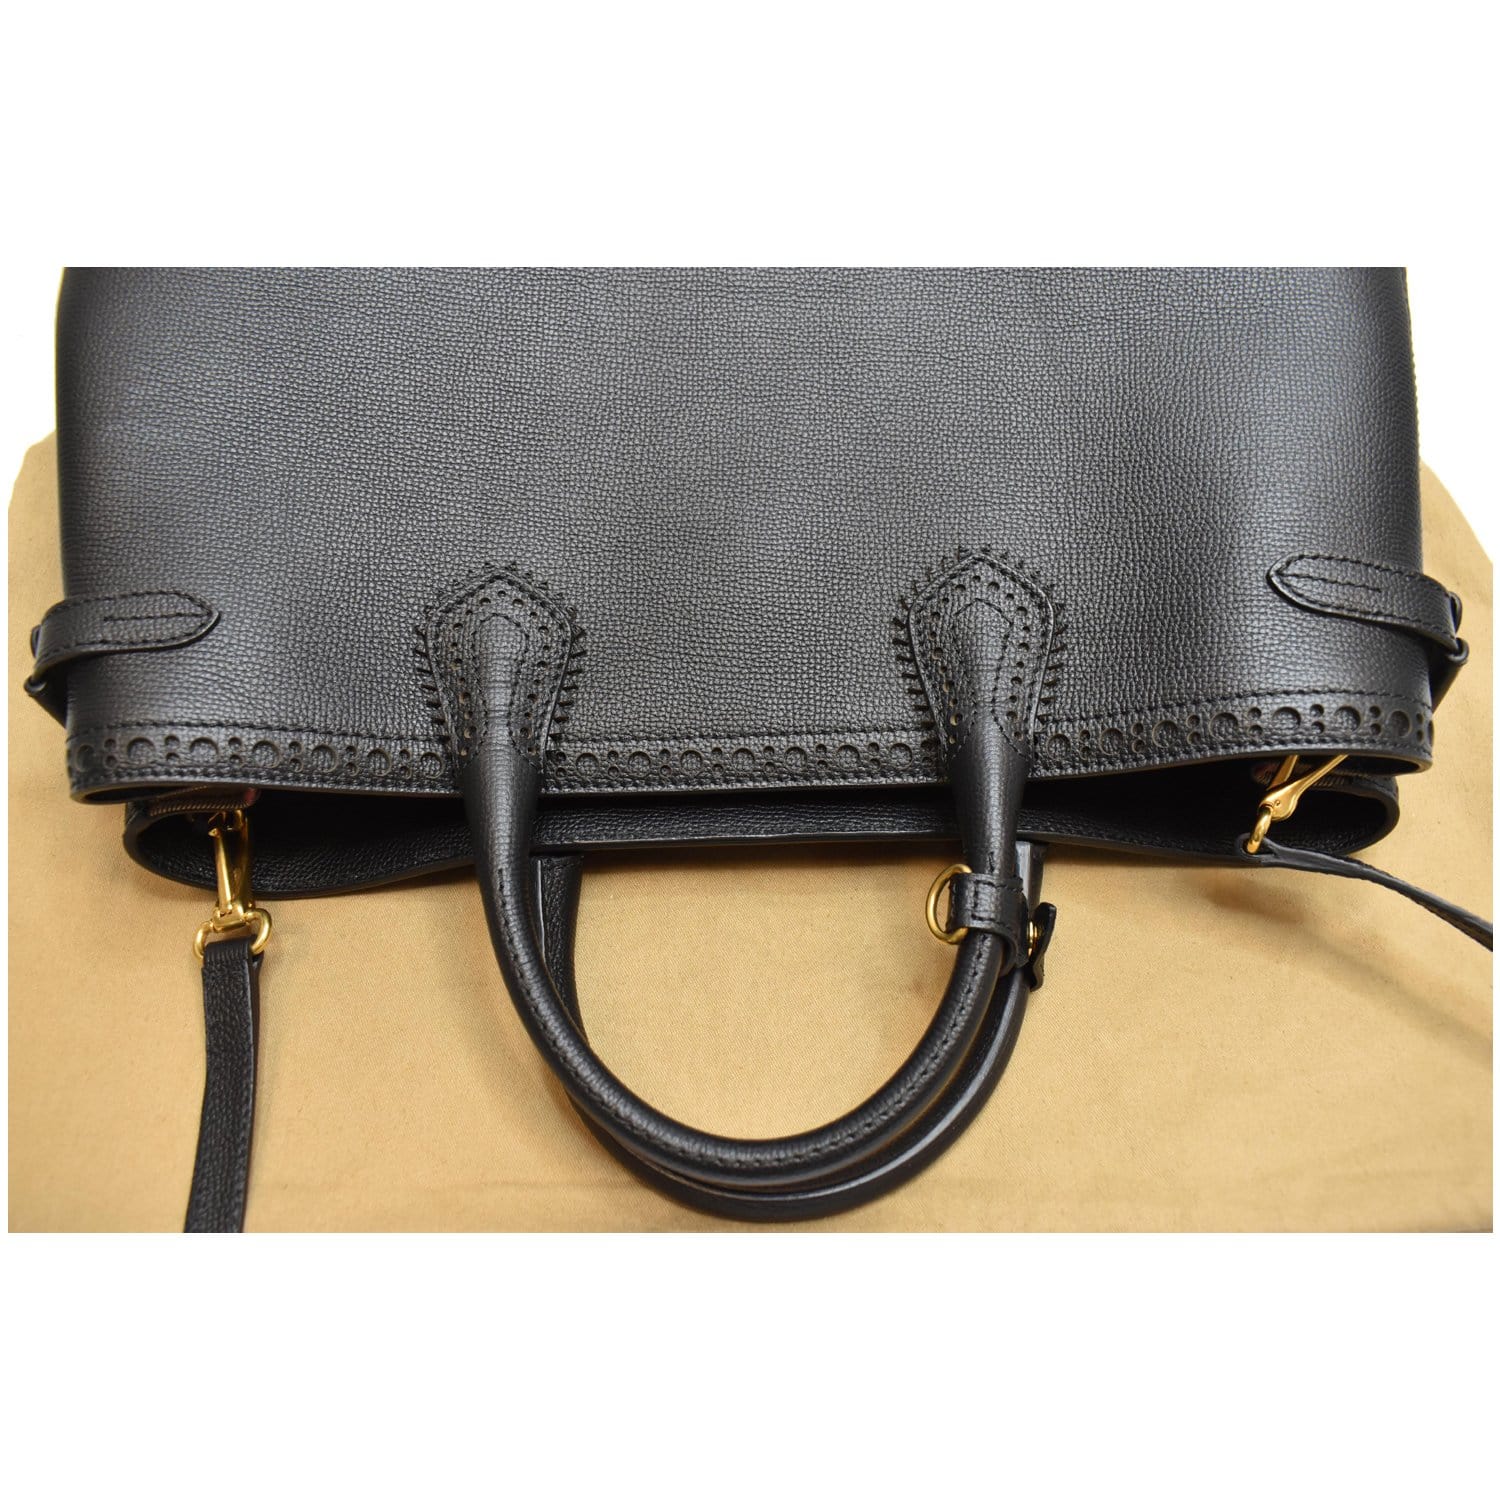 Burberry Banner shoulder tote bag, black, brown leather purse. bidding ends  9/17 $150.00